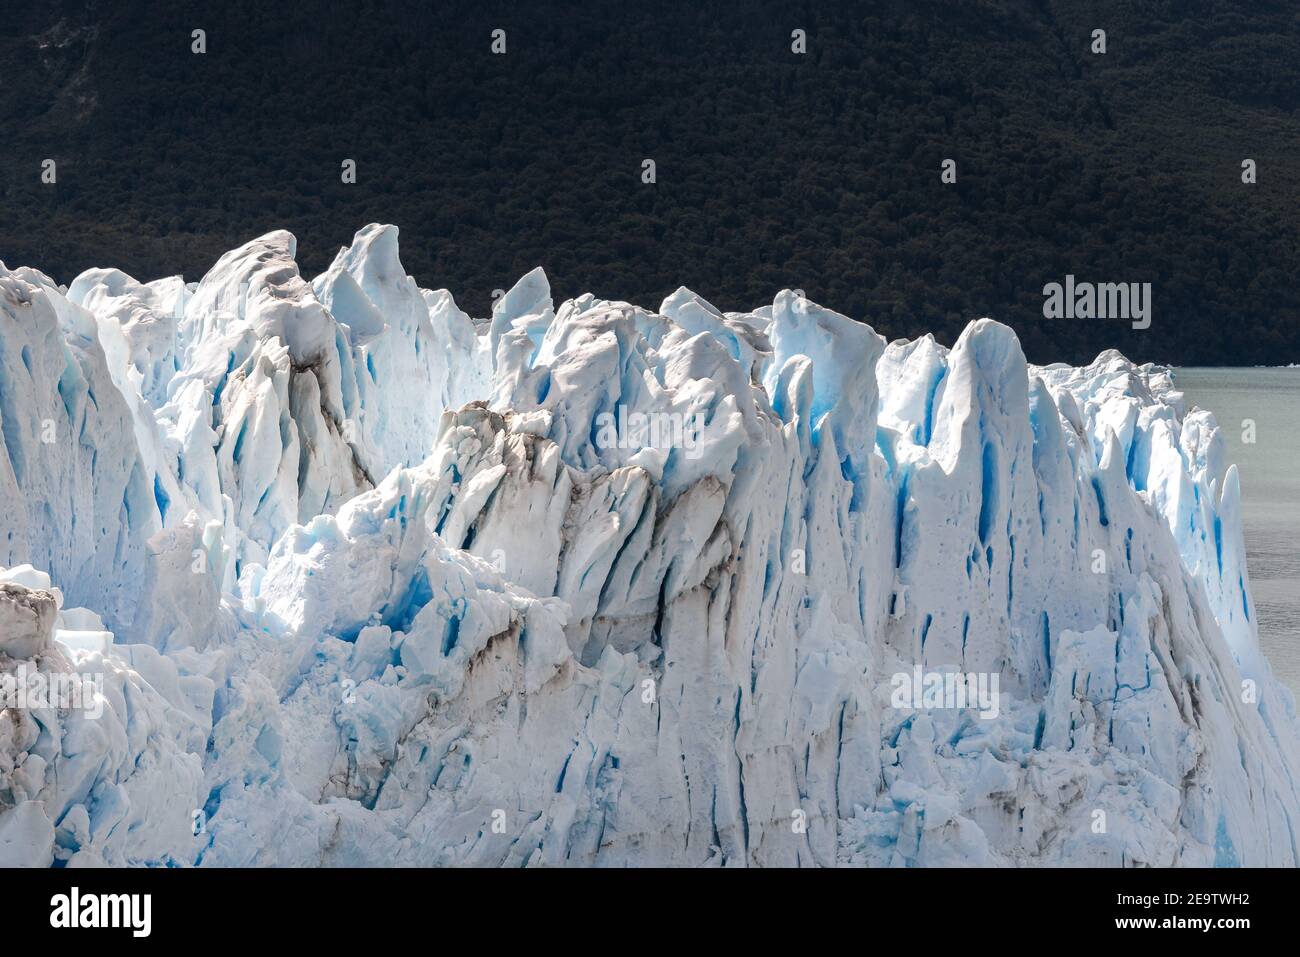 Perito Moreno glacier in Los Glaciares National Park, Argentina Stock Photo